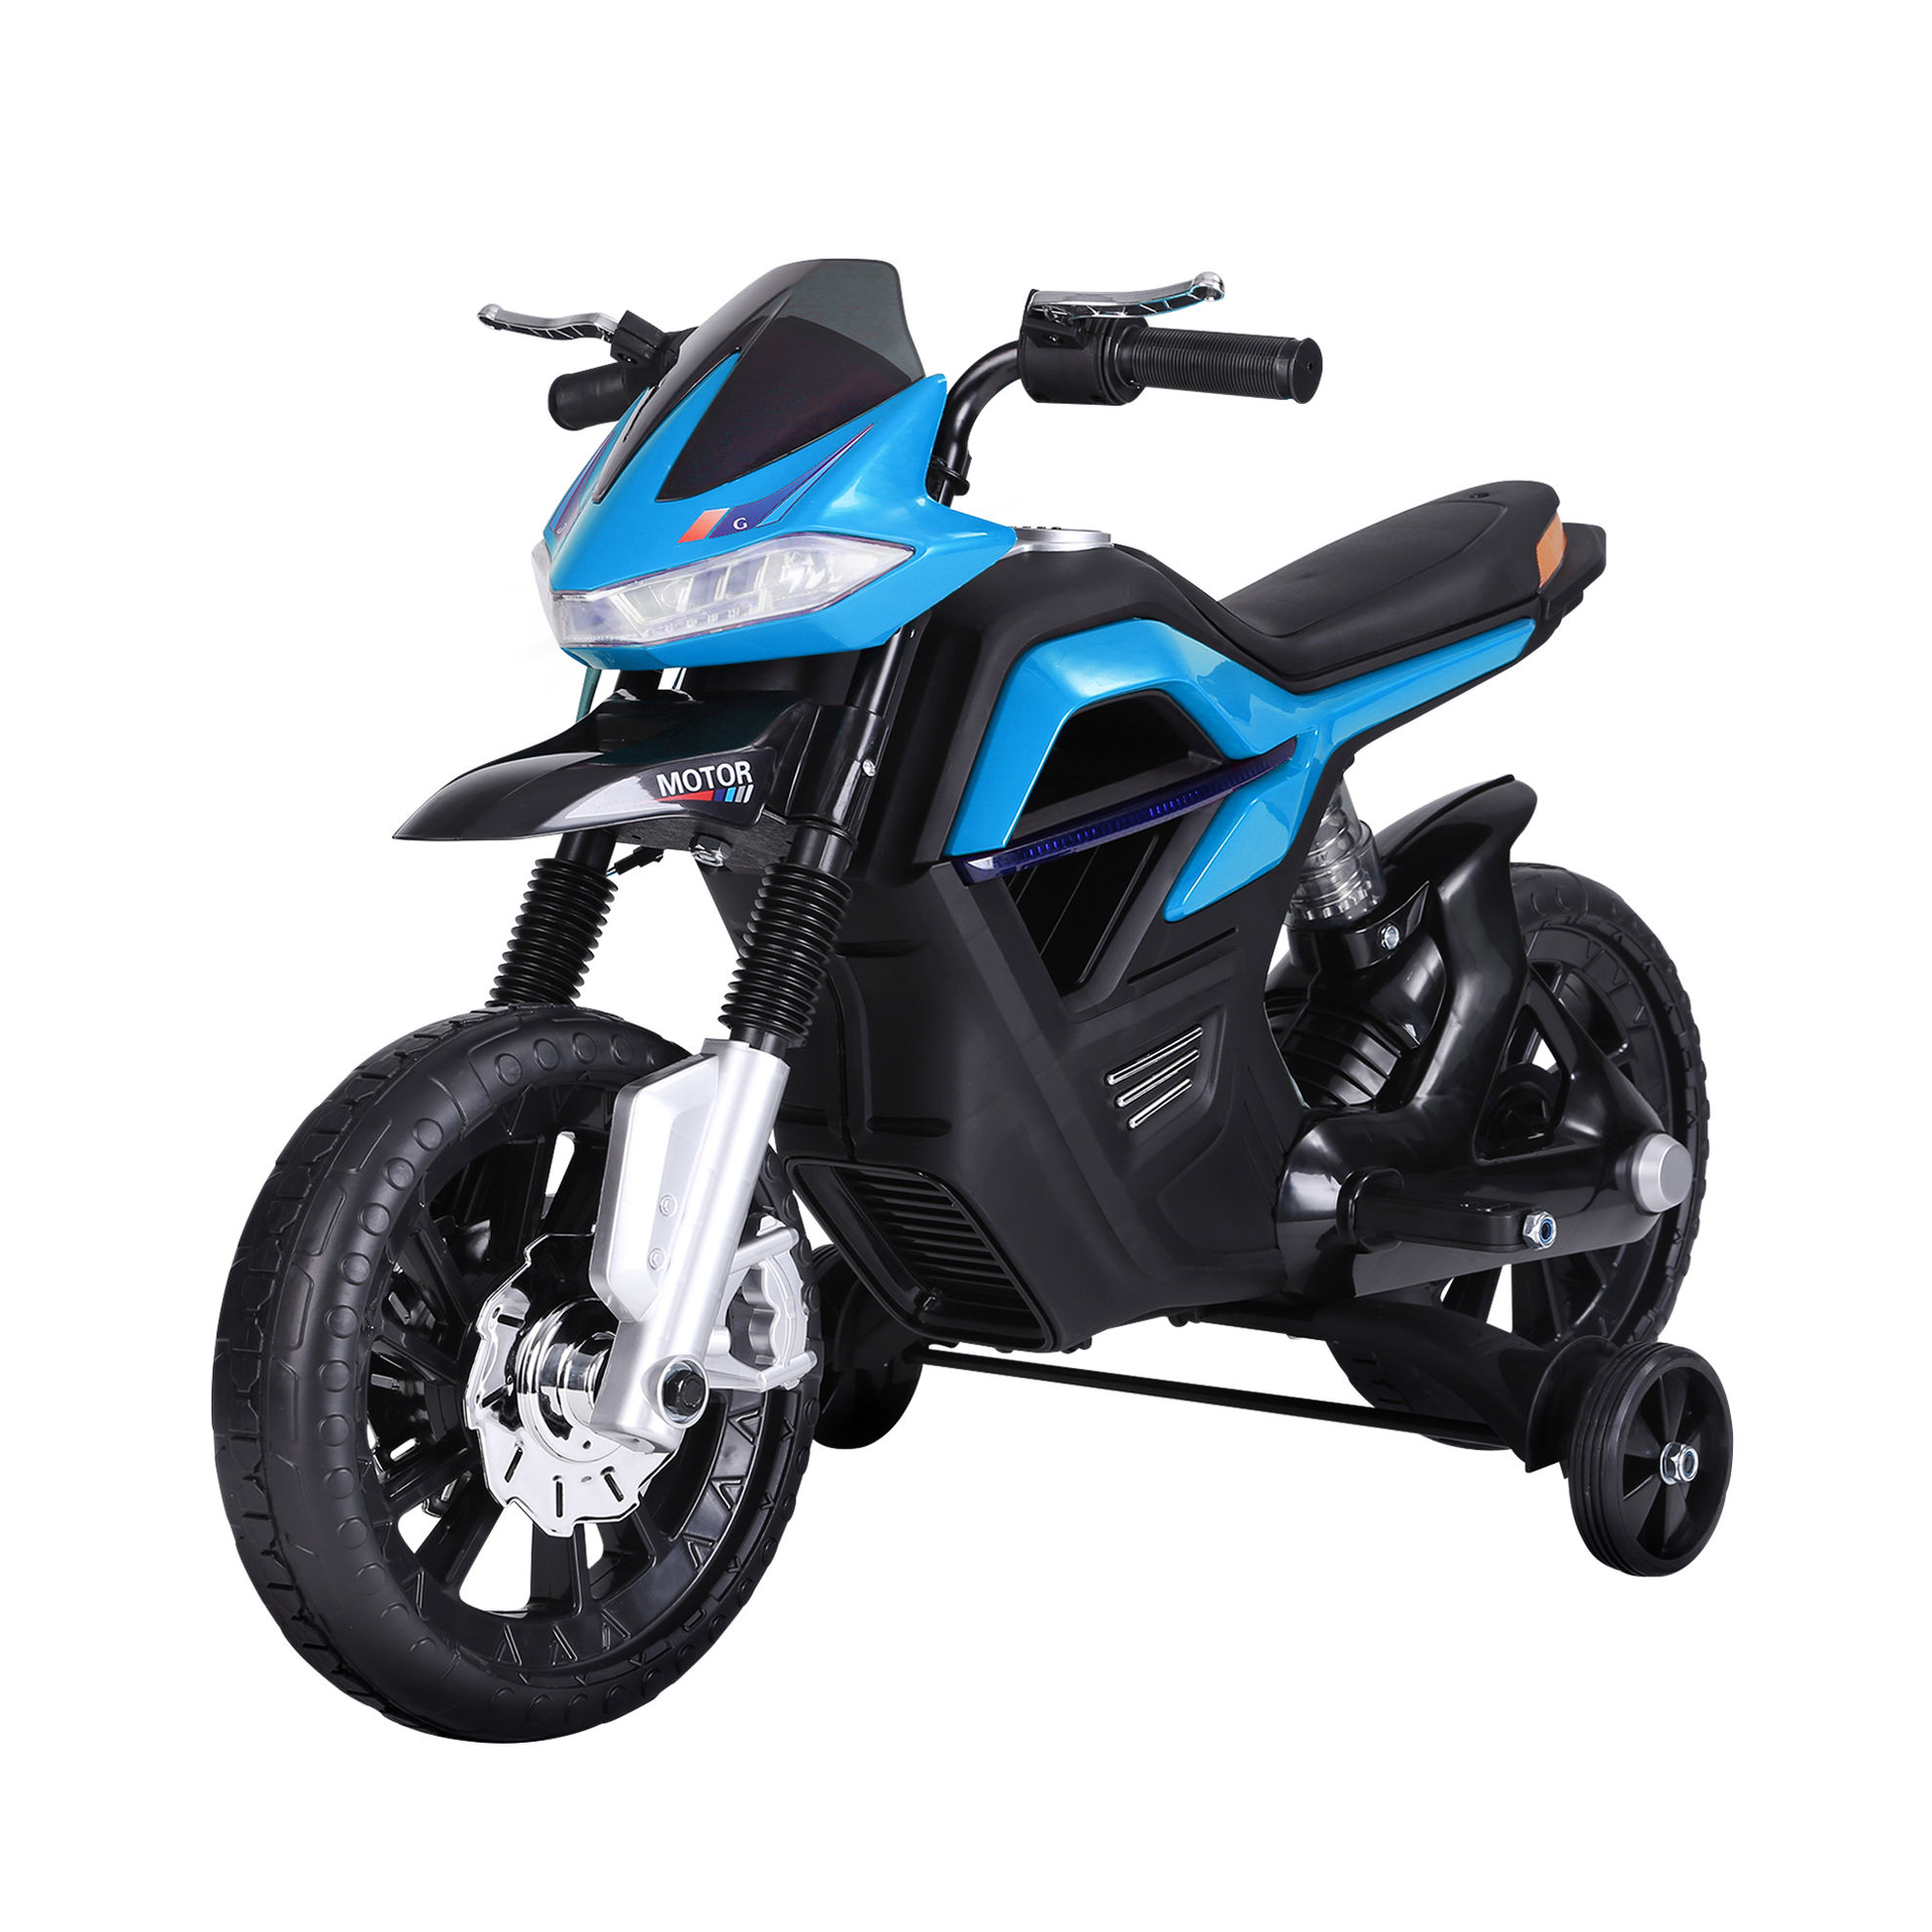 Elektro-Motorrad für Kinder Farbe: blau bestellen | Weltbild.de